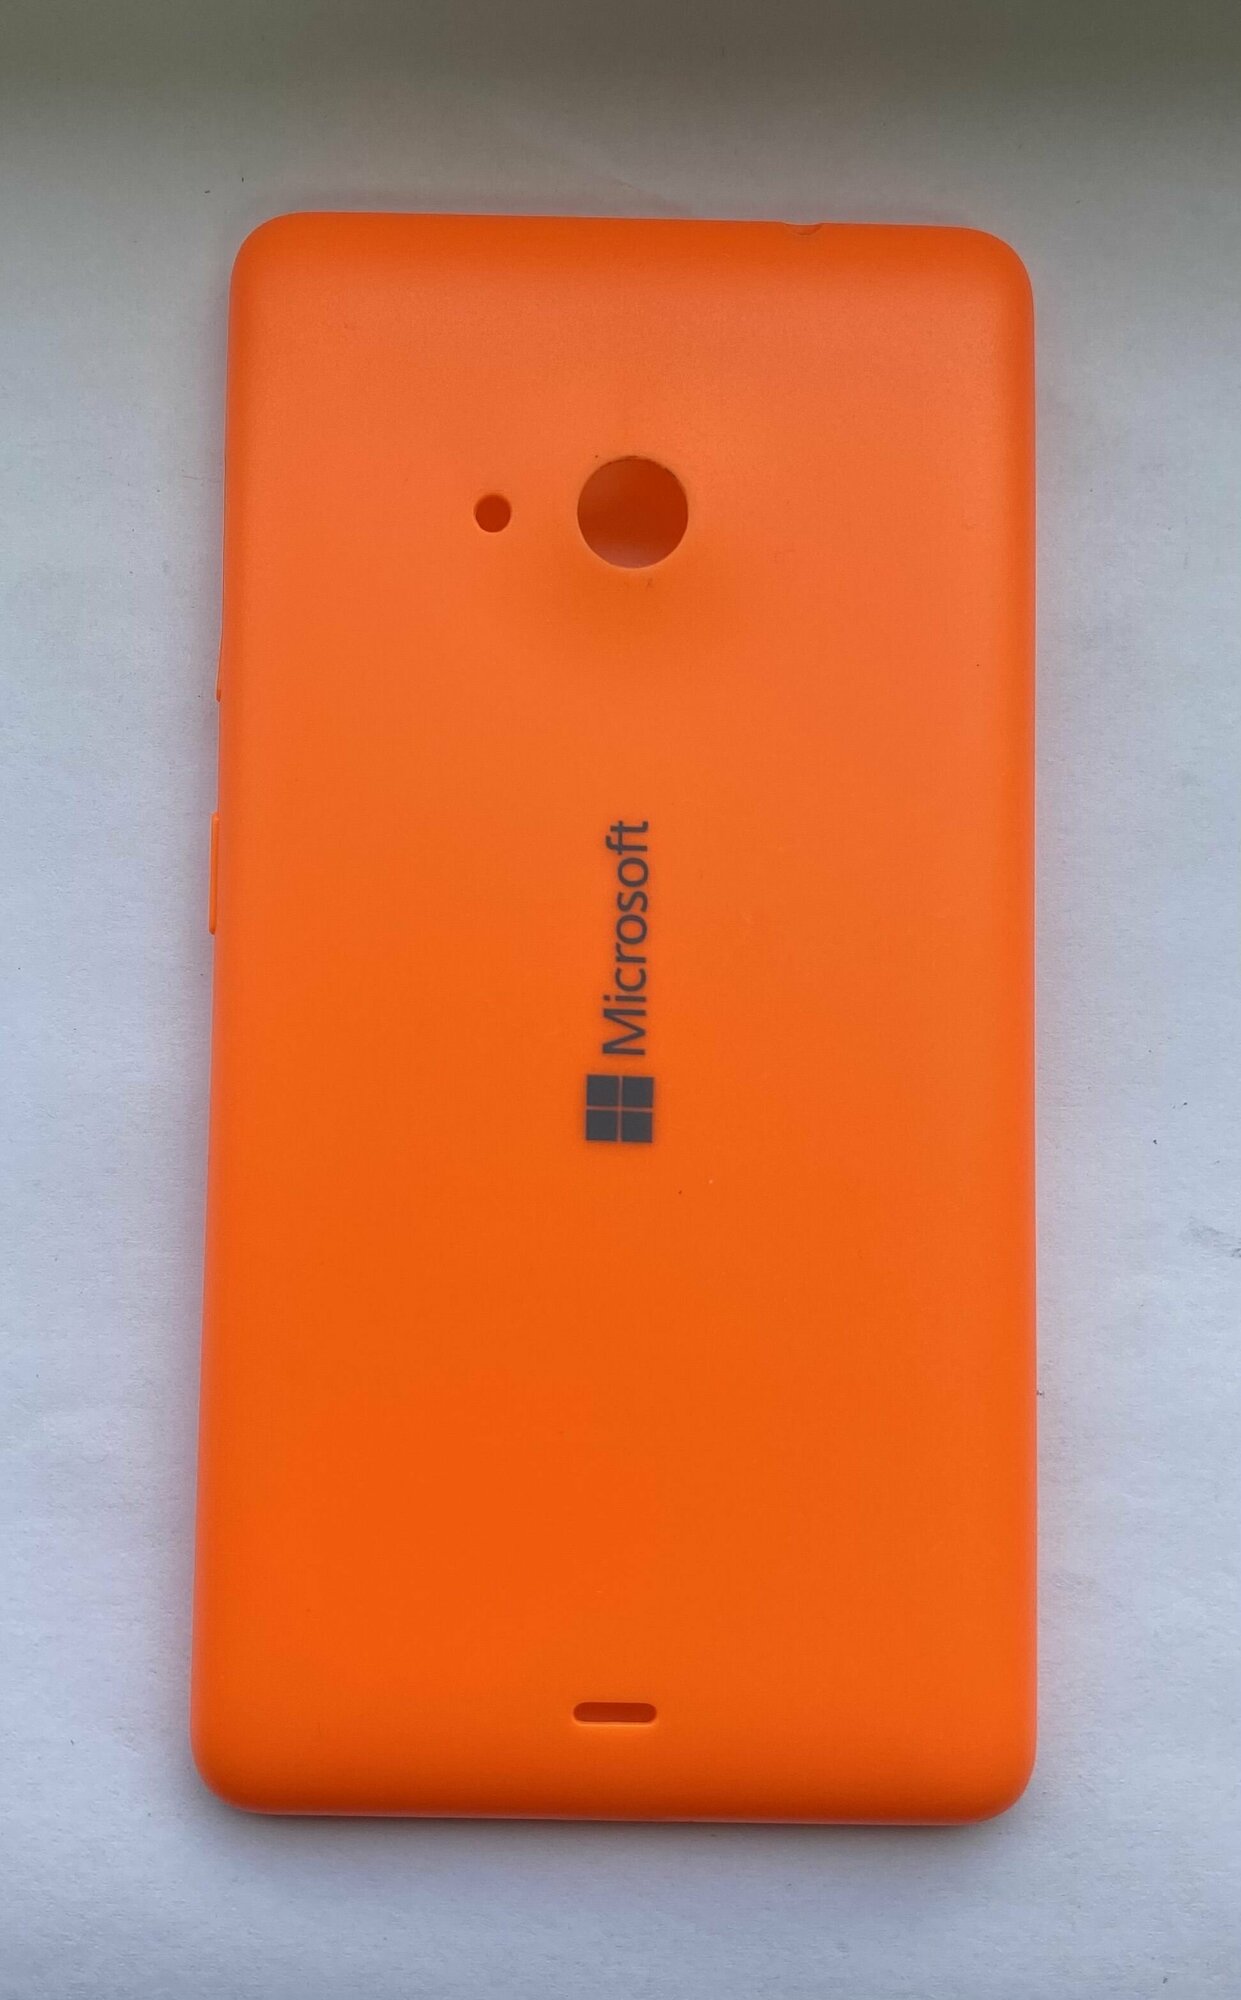 Задняя крышка для Nokia 535